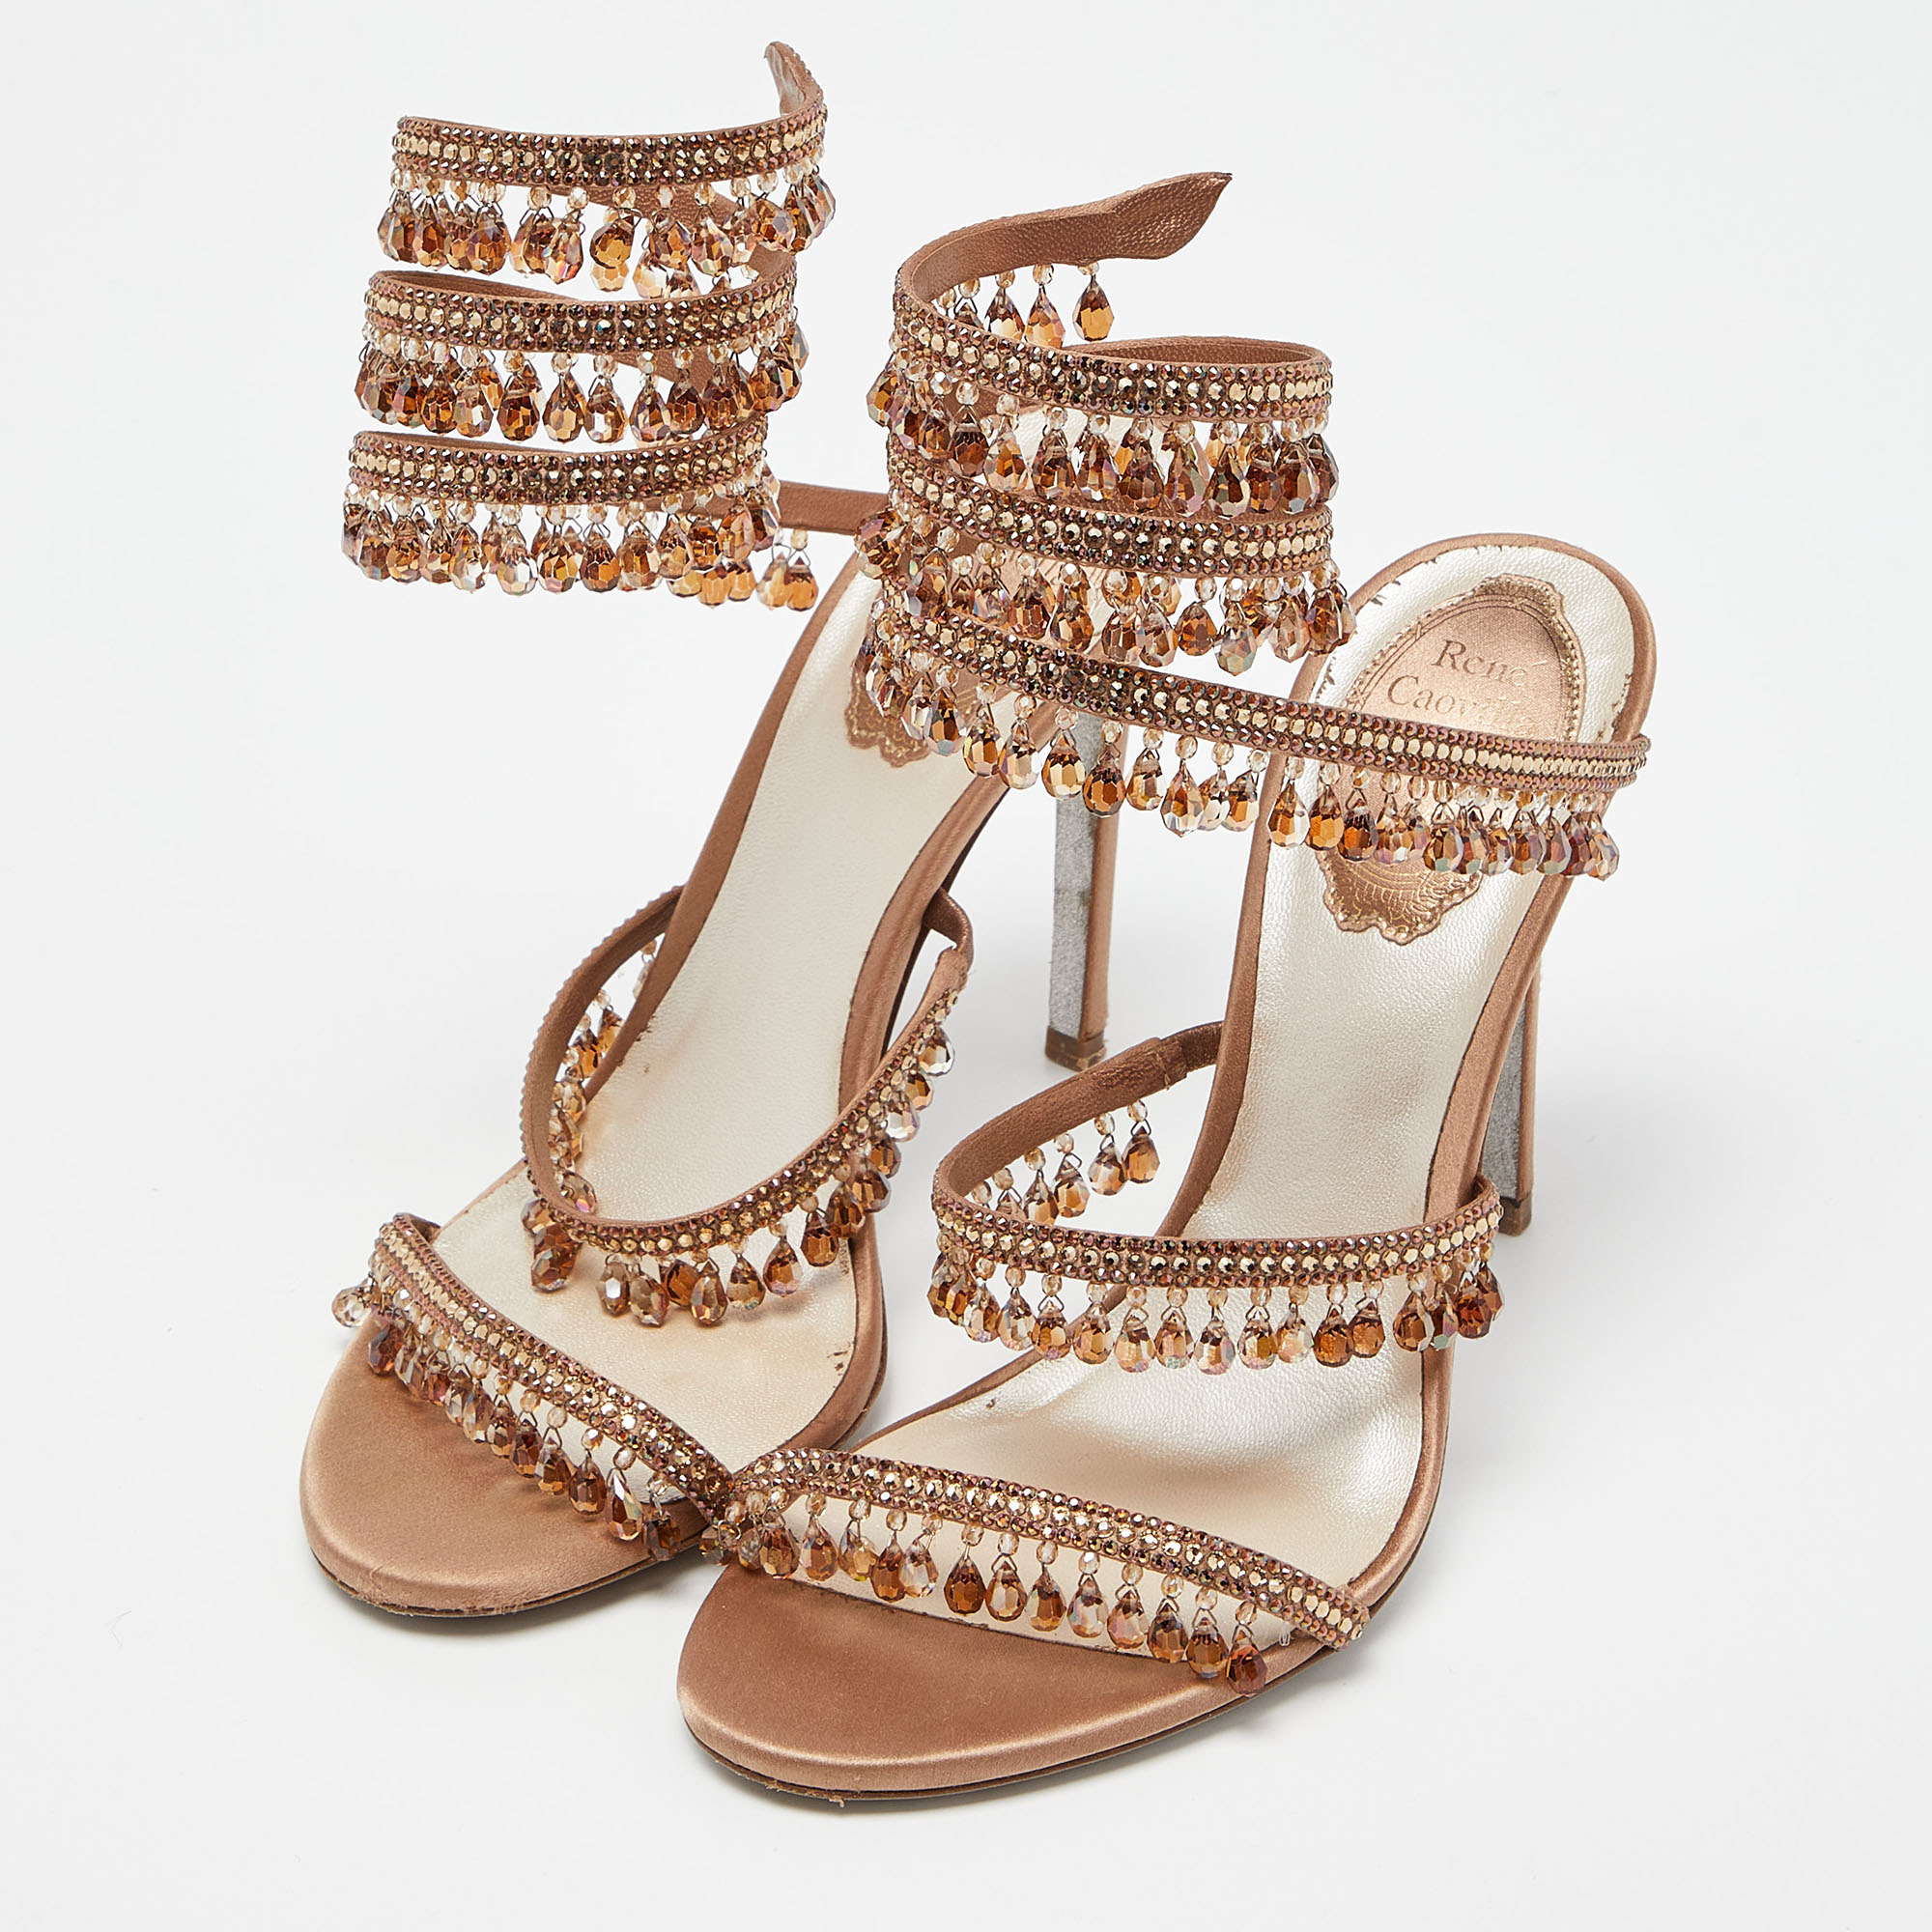 

Rene Caovilla Beige Satin Crystal Embellished Chandelier Ankle Wrap Sandals Size